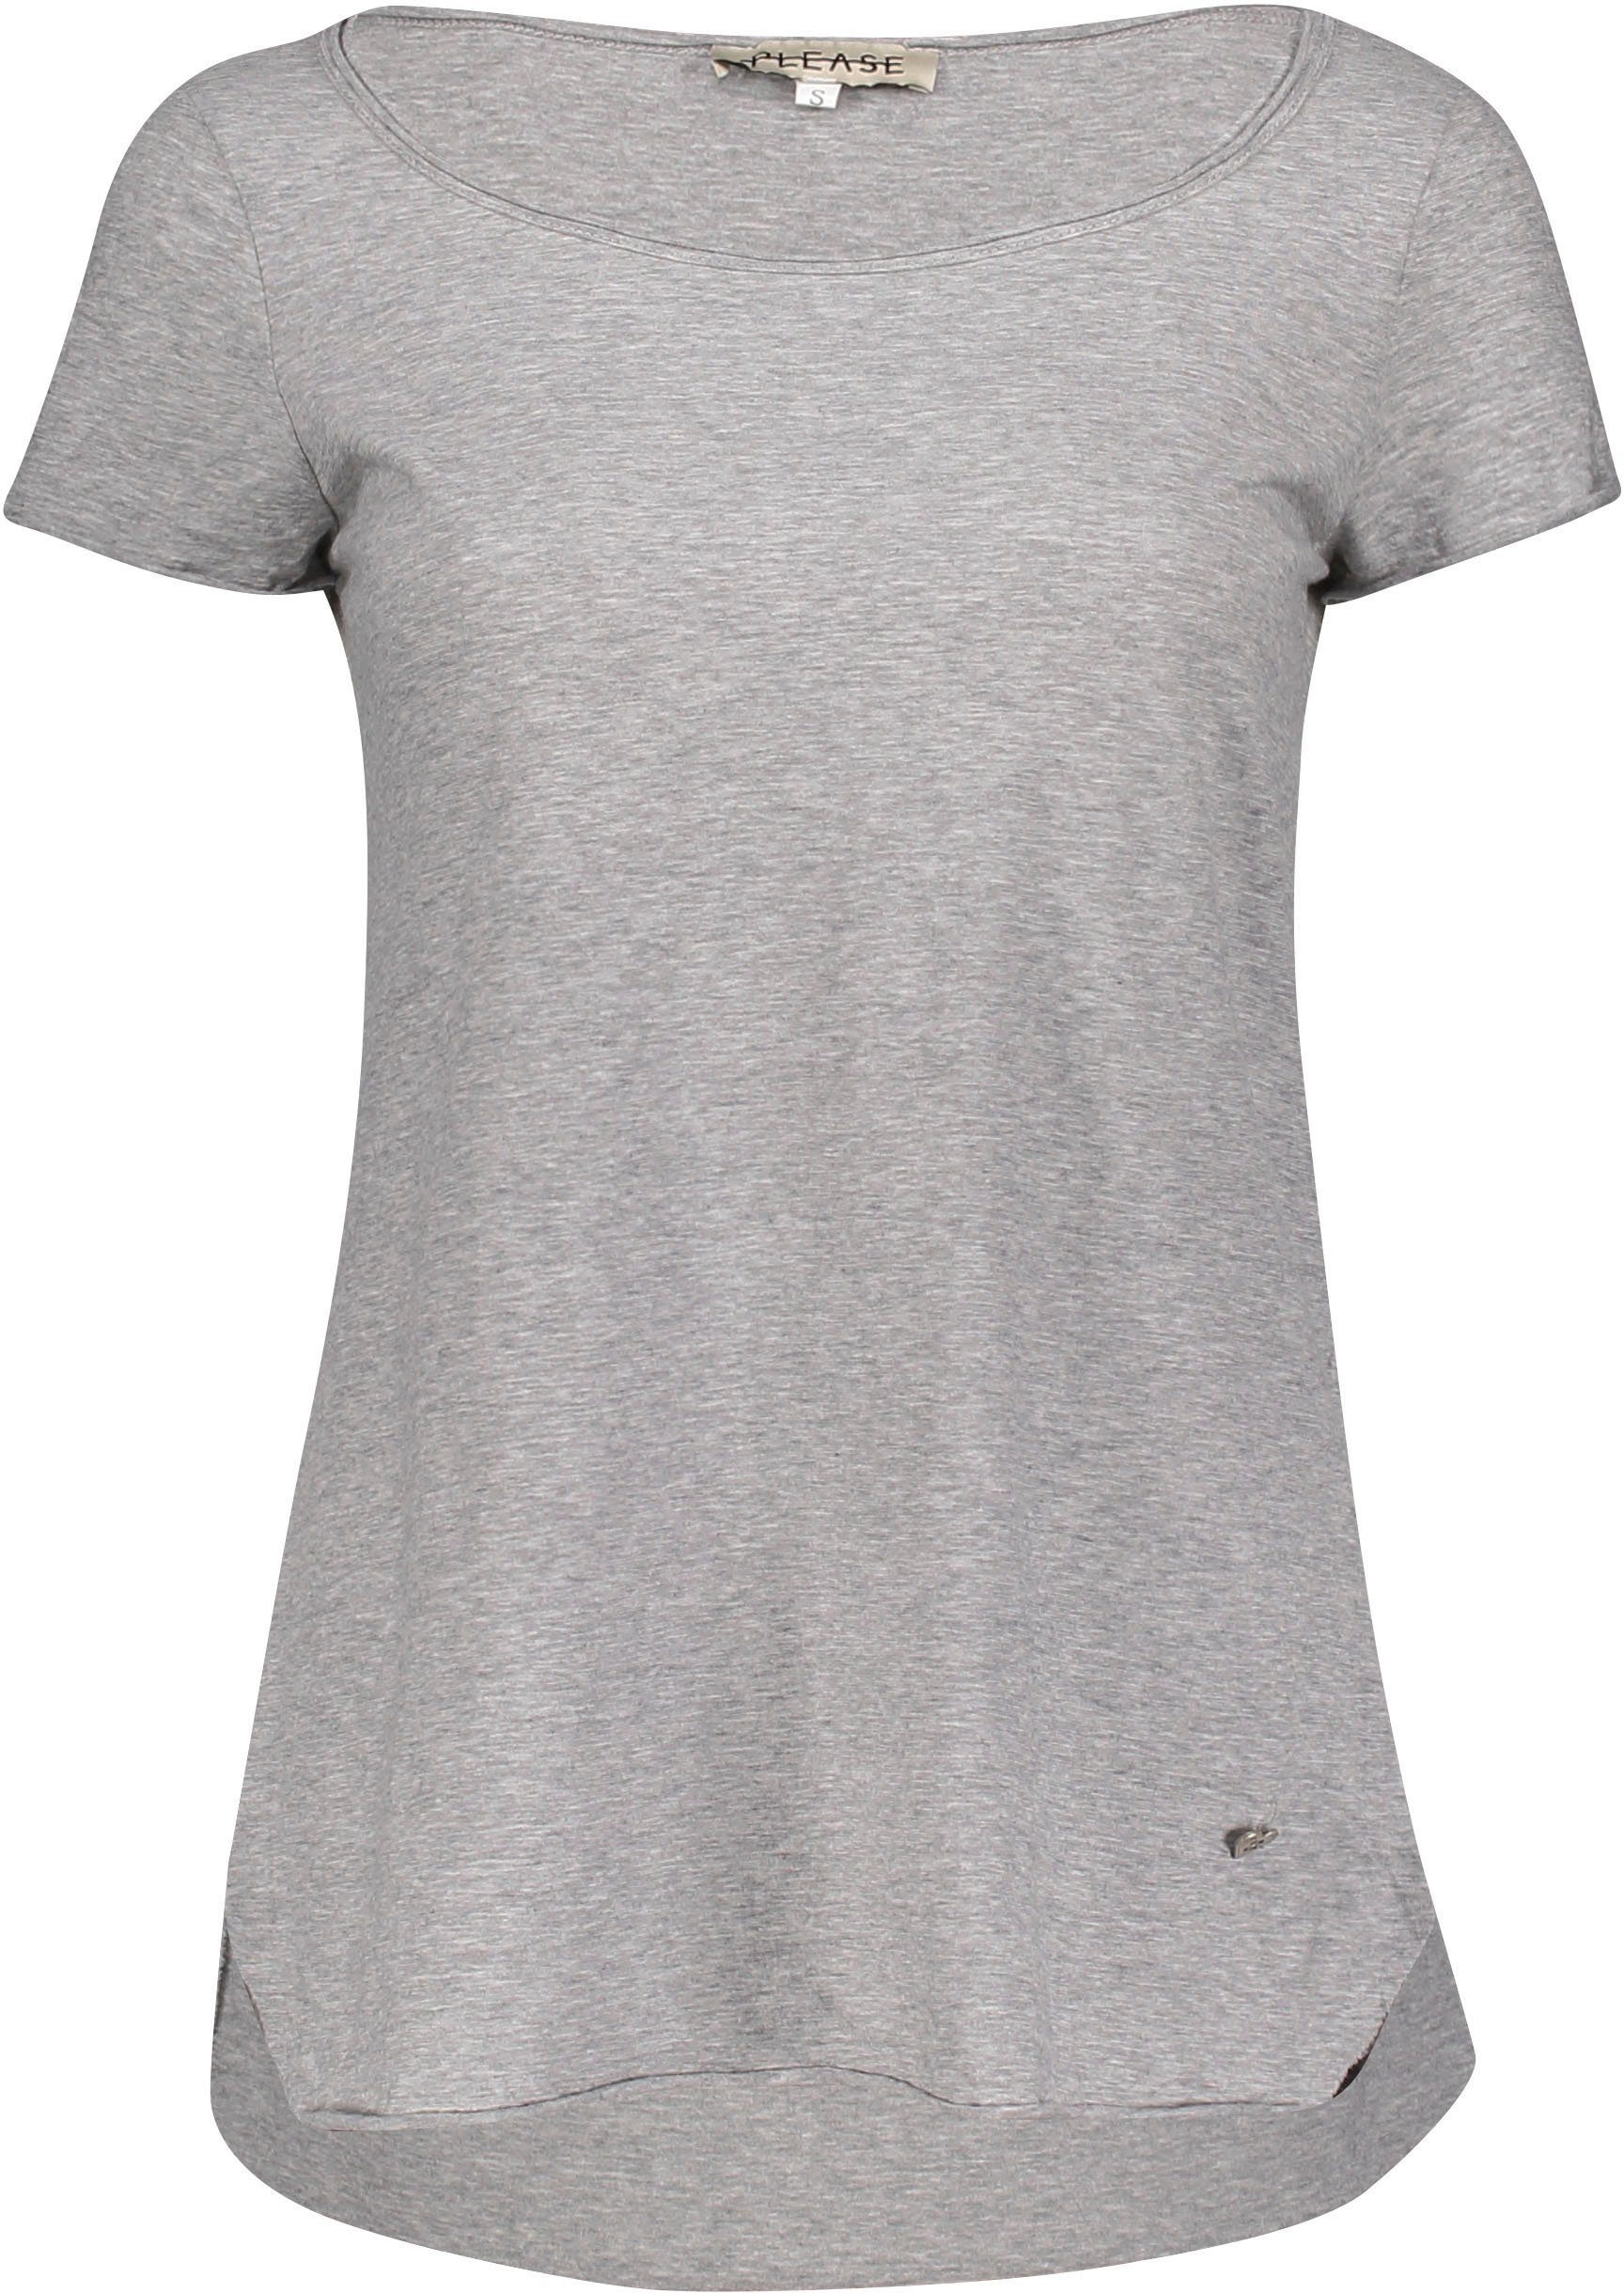 (grau M00A T-Shirt und Please Metal-Label Saumabschlüssen leicht grigio mit 1907 Please meliert) angeschnittenen melange Jeans